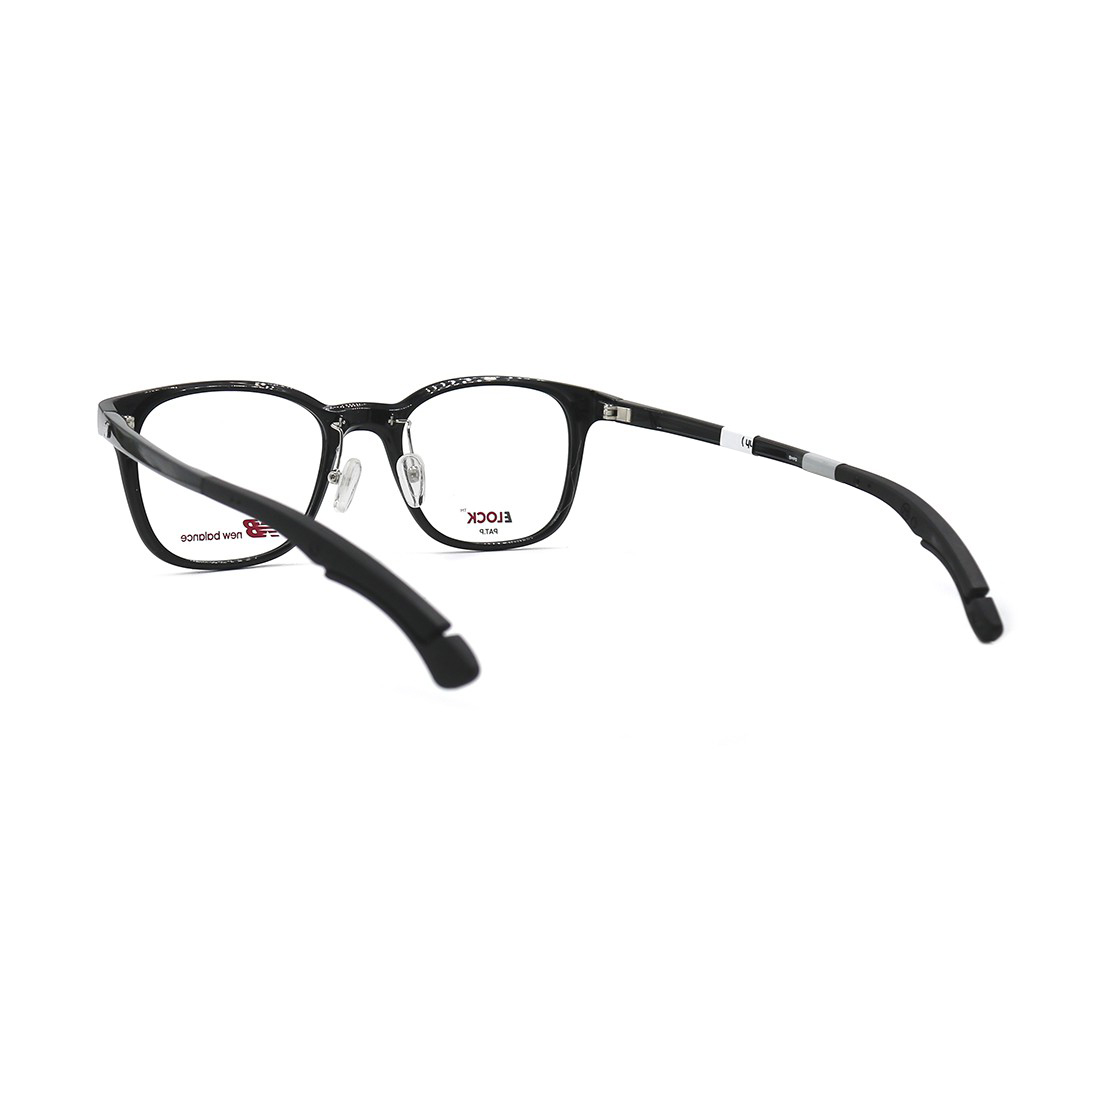 Gọng kính, mắt kính chính hãng Unisex NEW BALANC NB09042 C01 (51.19.150)